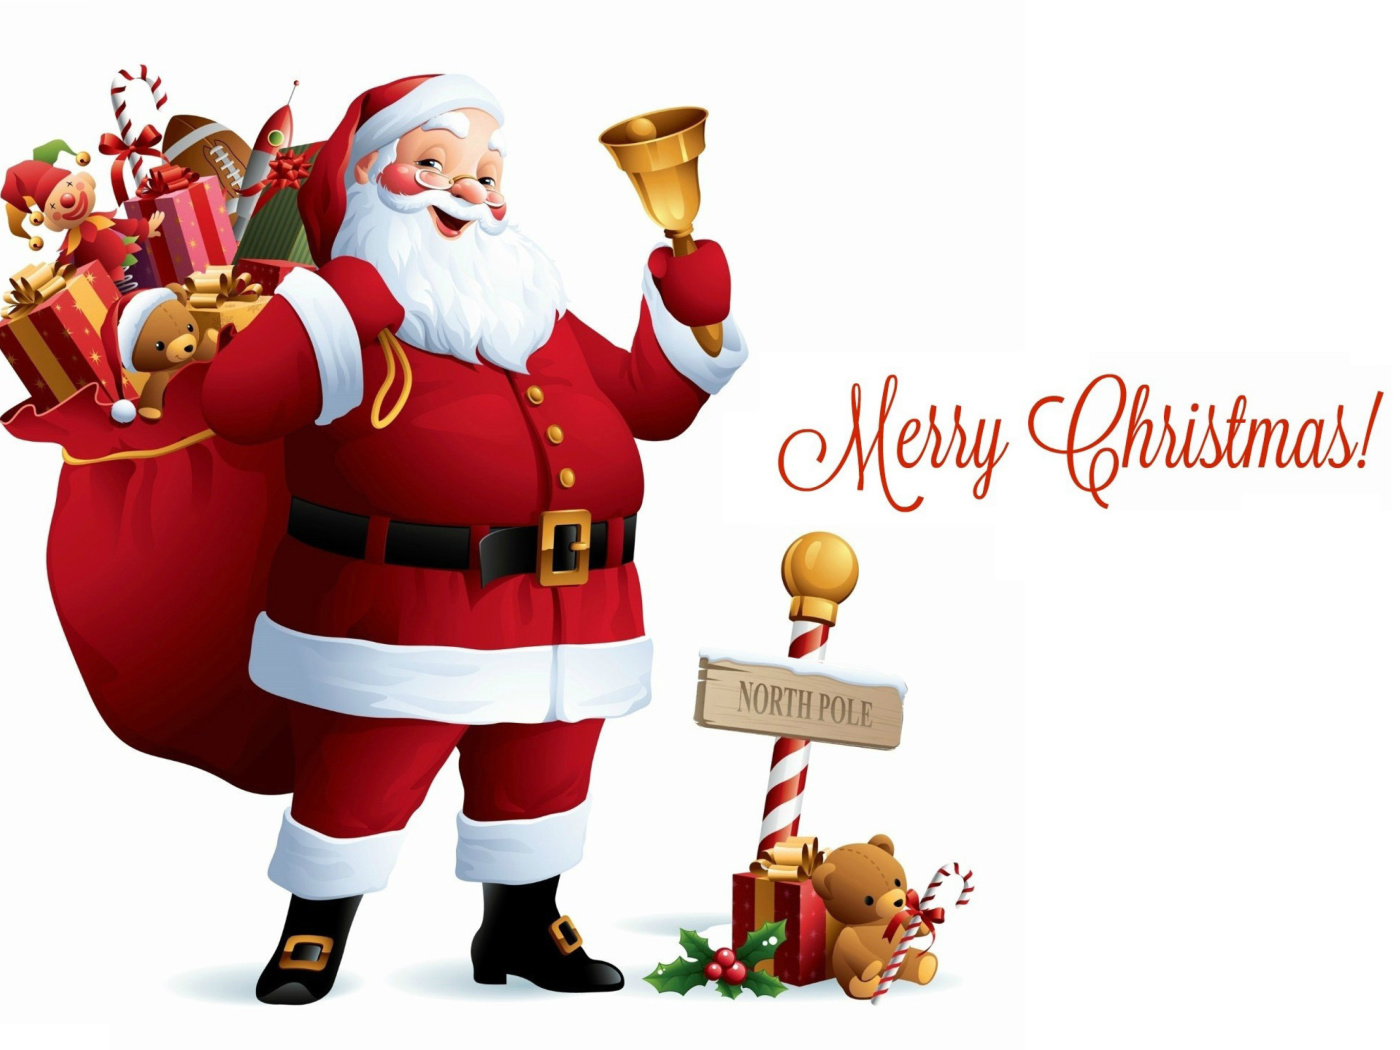 HO HO HO Merry Christmas Santa Claus wallpaper 1400x1050